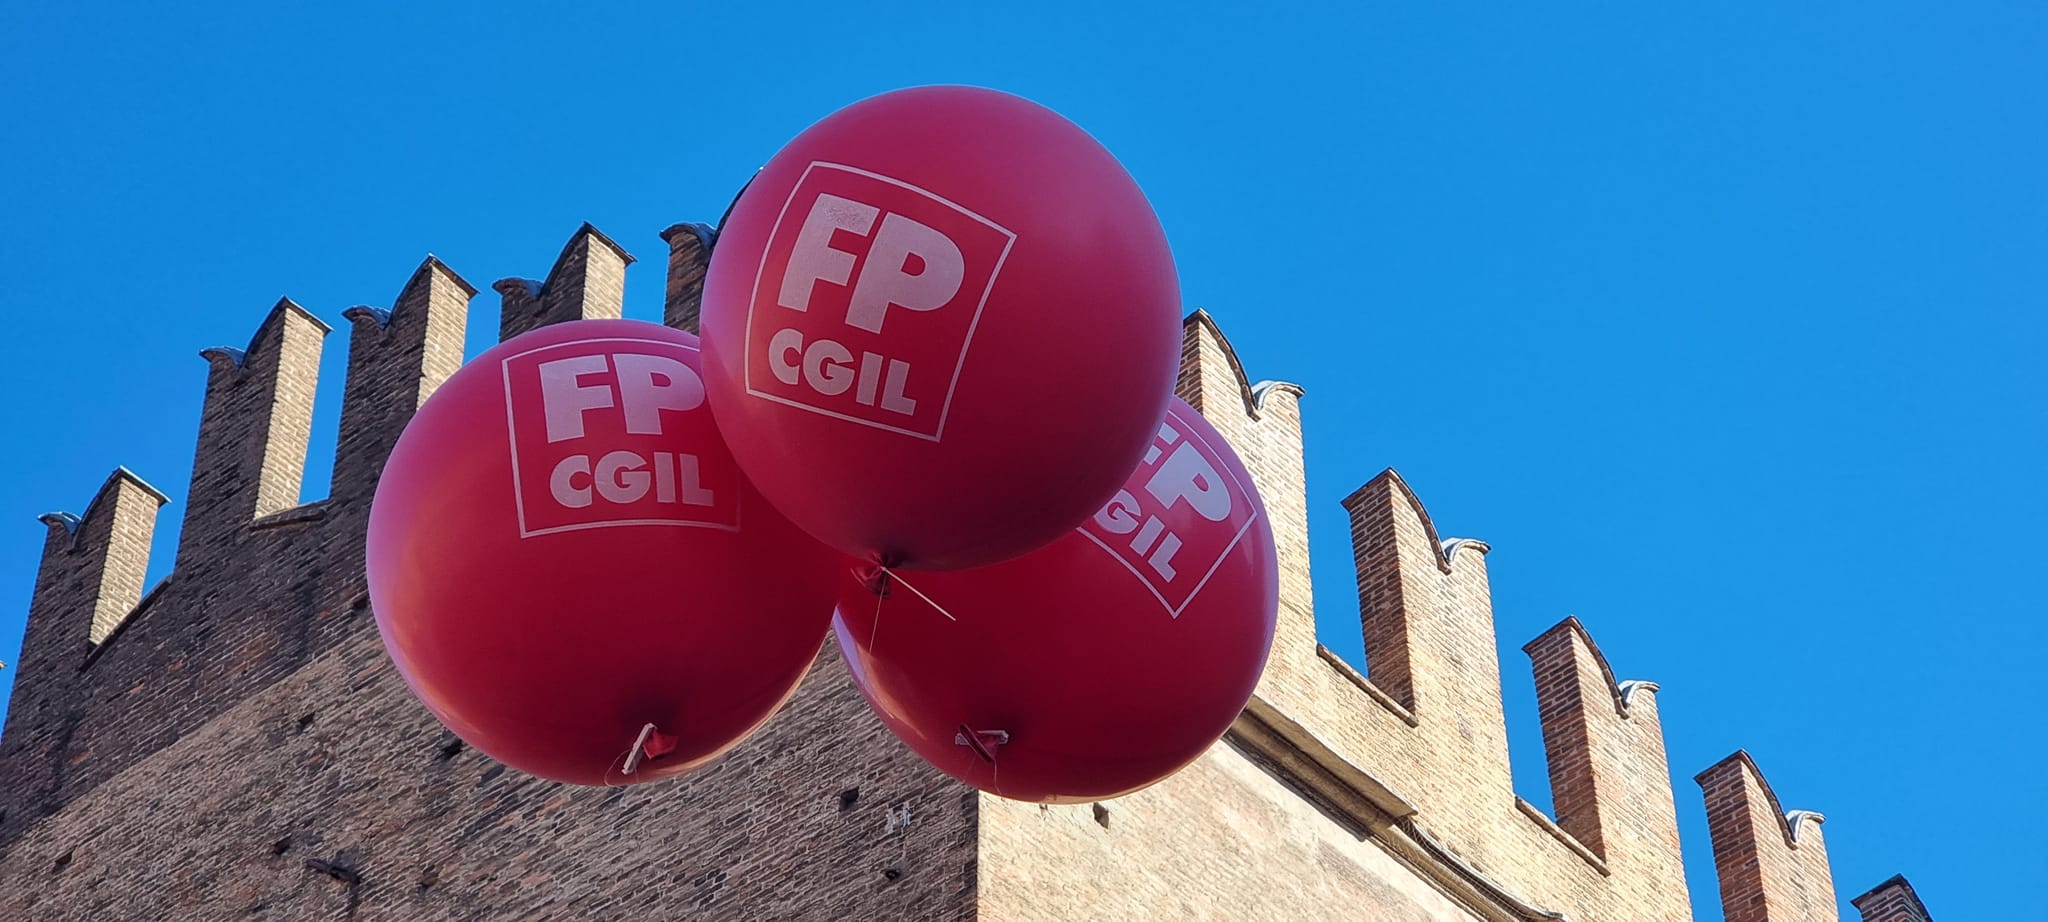 FP CGIL Bologna ha proclamato lo stato di agitazione, verso lo sciopero generale in tutti i servizi pubblici e privati dell’area metropolitana, che fanno capo alla categoria bolognese